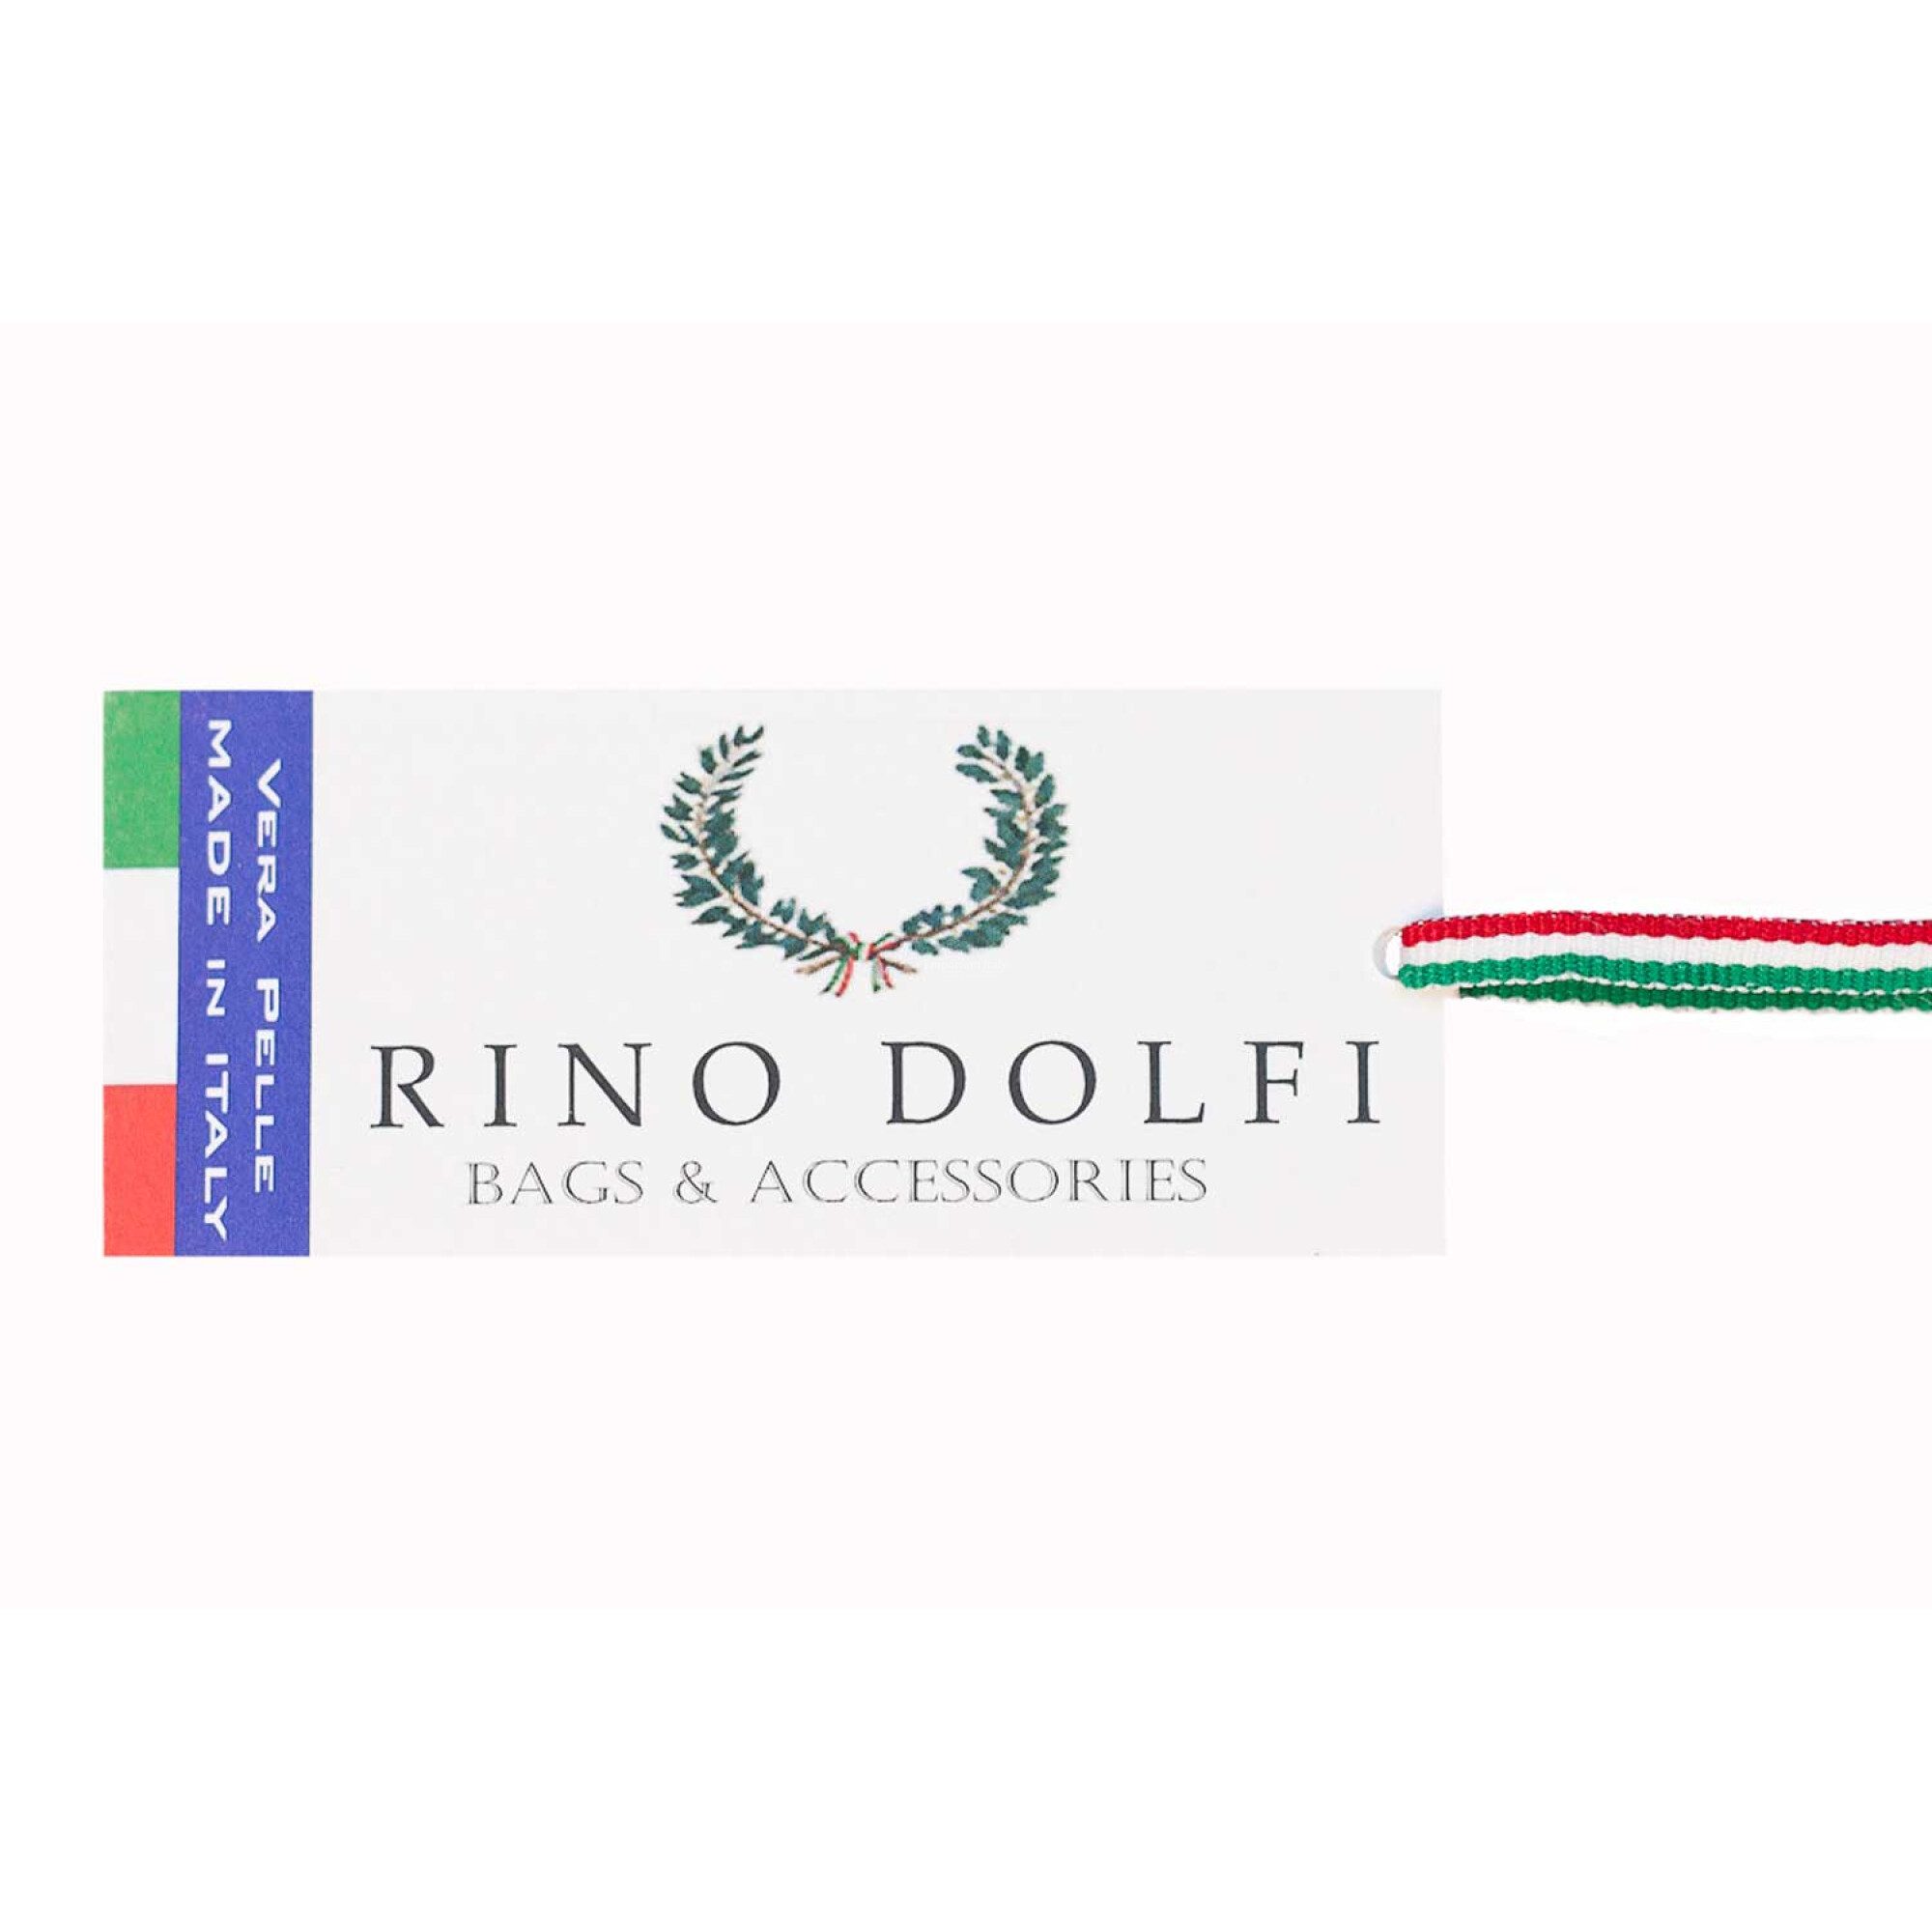 Borsa da viaggio uomo / donna in vera pelle, bandiera tricolore Italiana  CHIAROSCURO mod. TIMAVO MAXI, colore ROSSO, Made in Italy., BORSE BANDIERA  ITALIANA